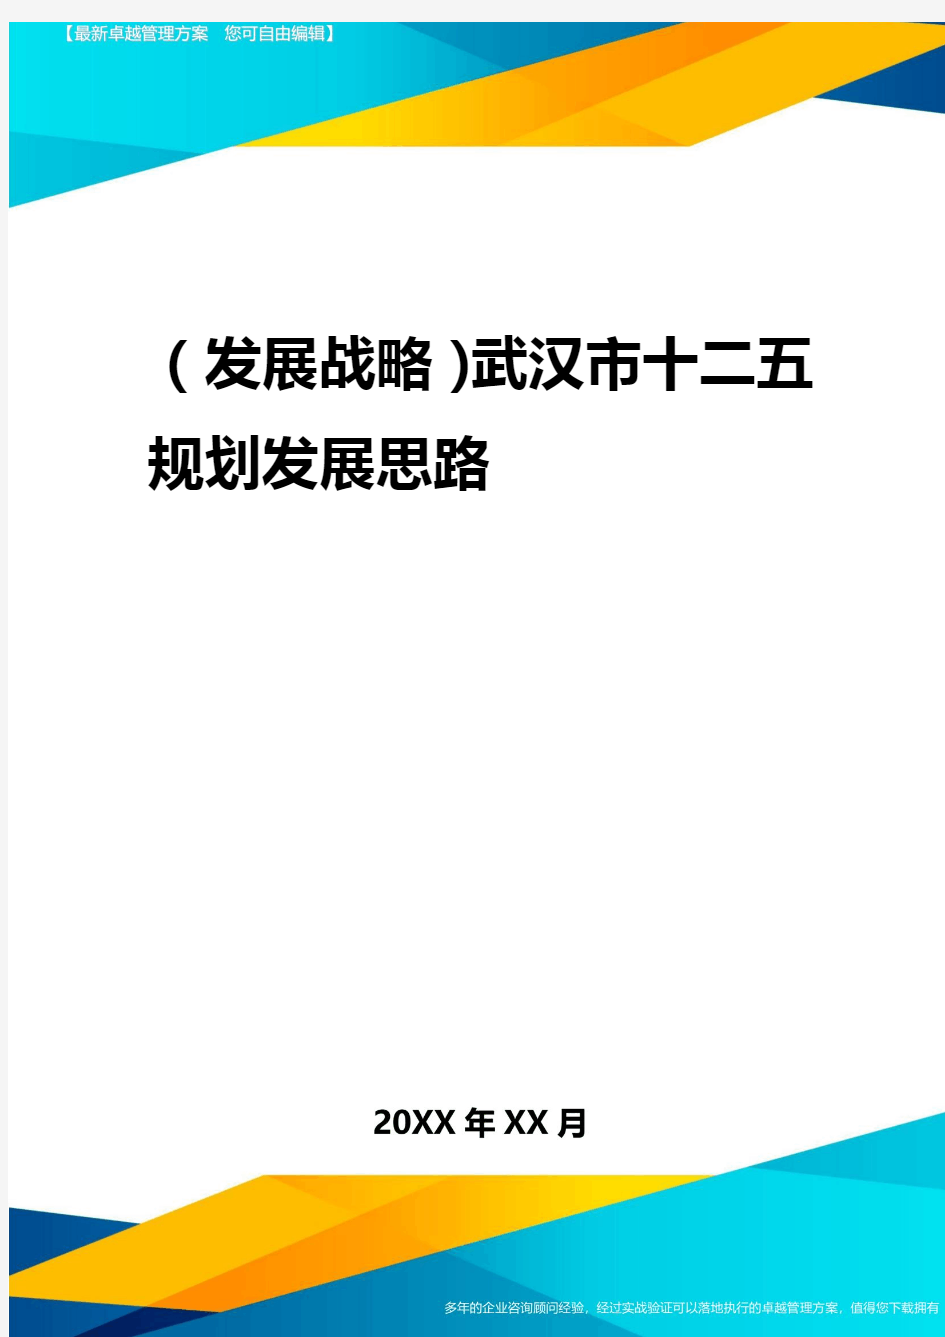 2020年(发展战略)武汉市十二五规划发展思路